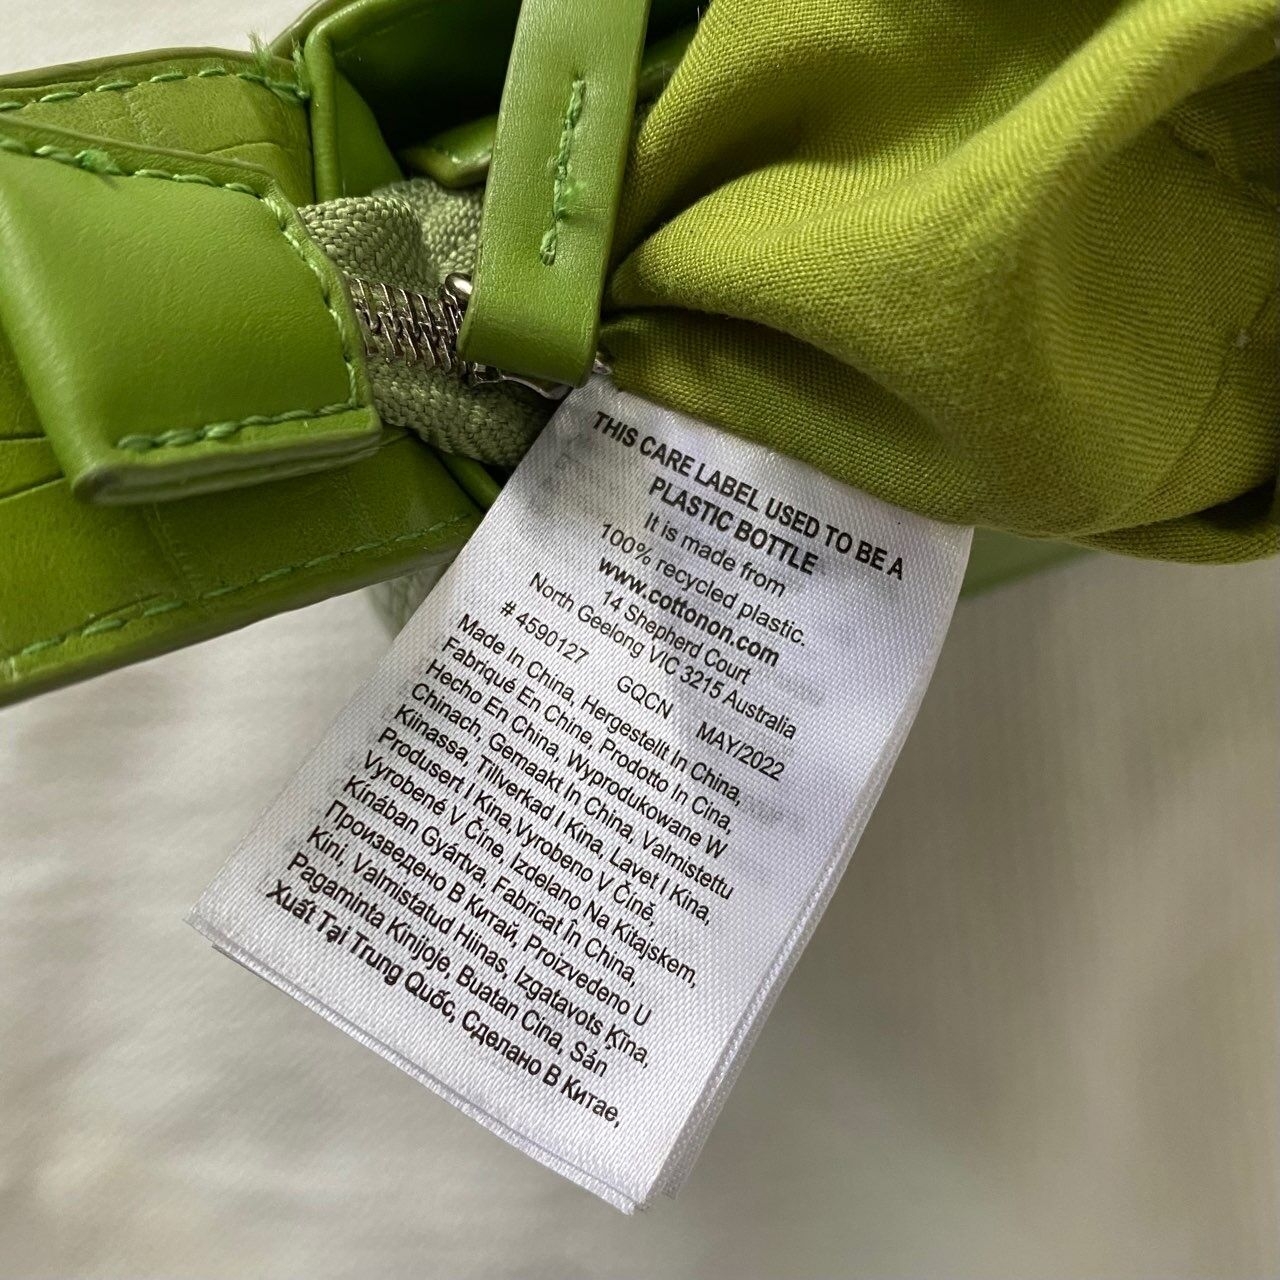 Cotton On Green Shoulder Bag